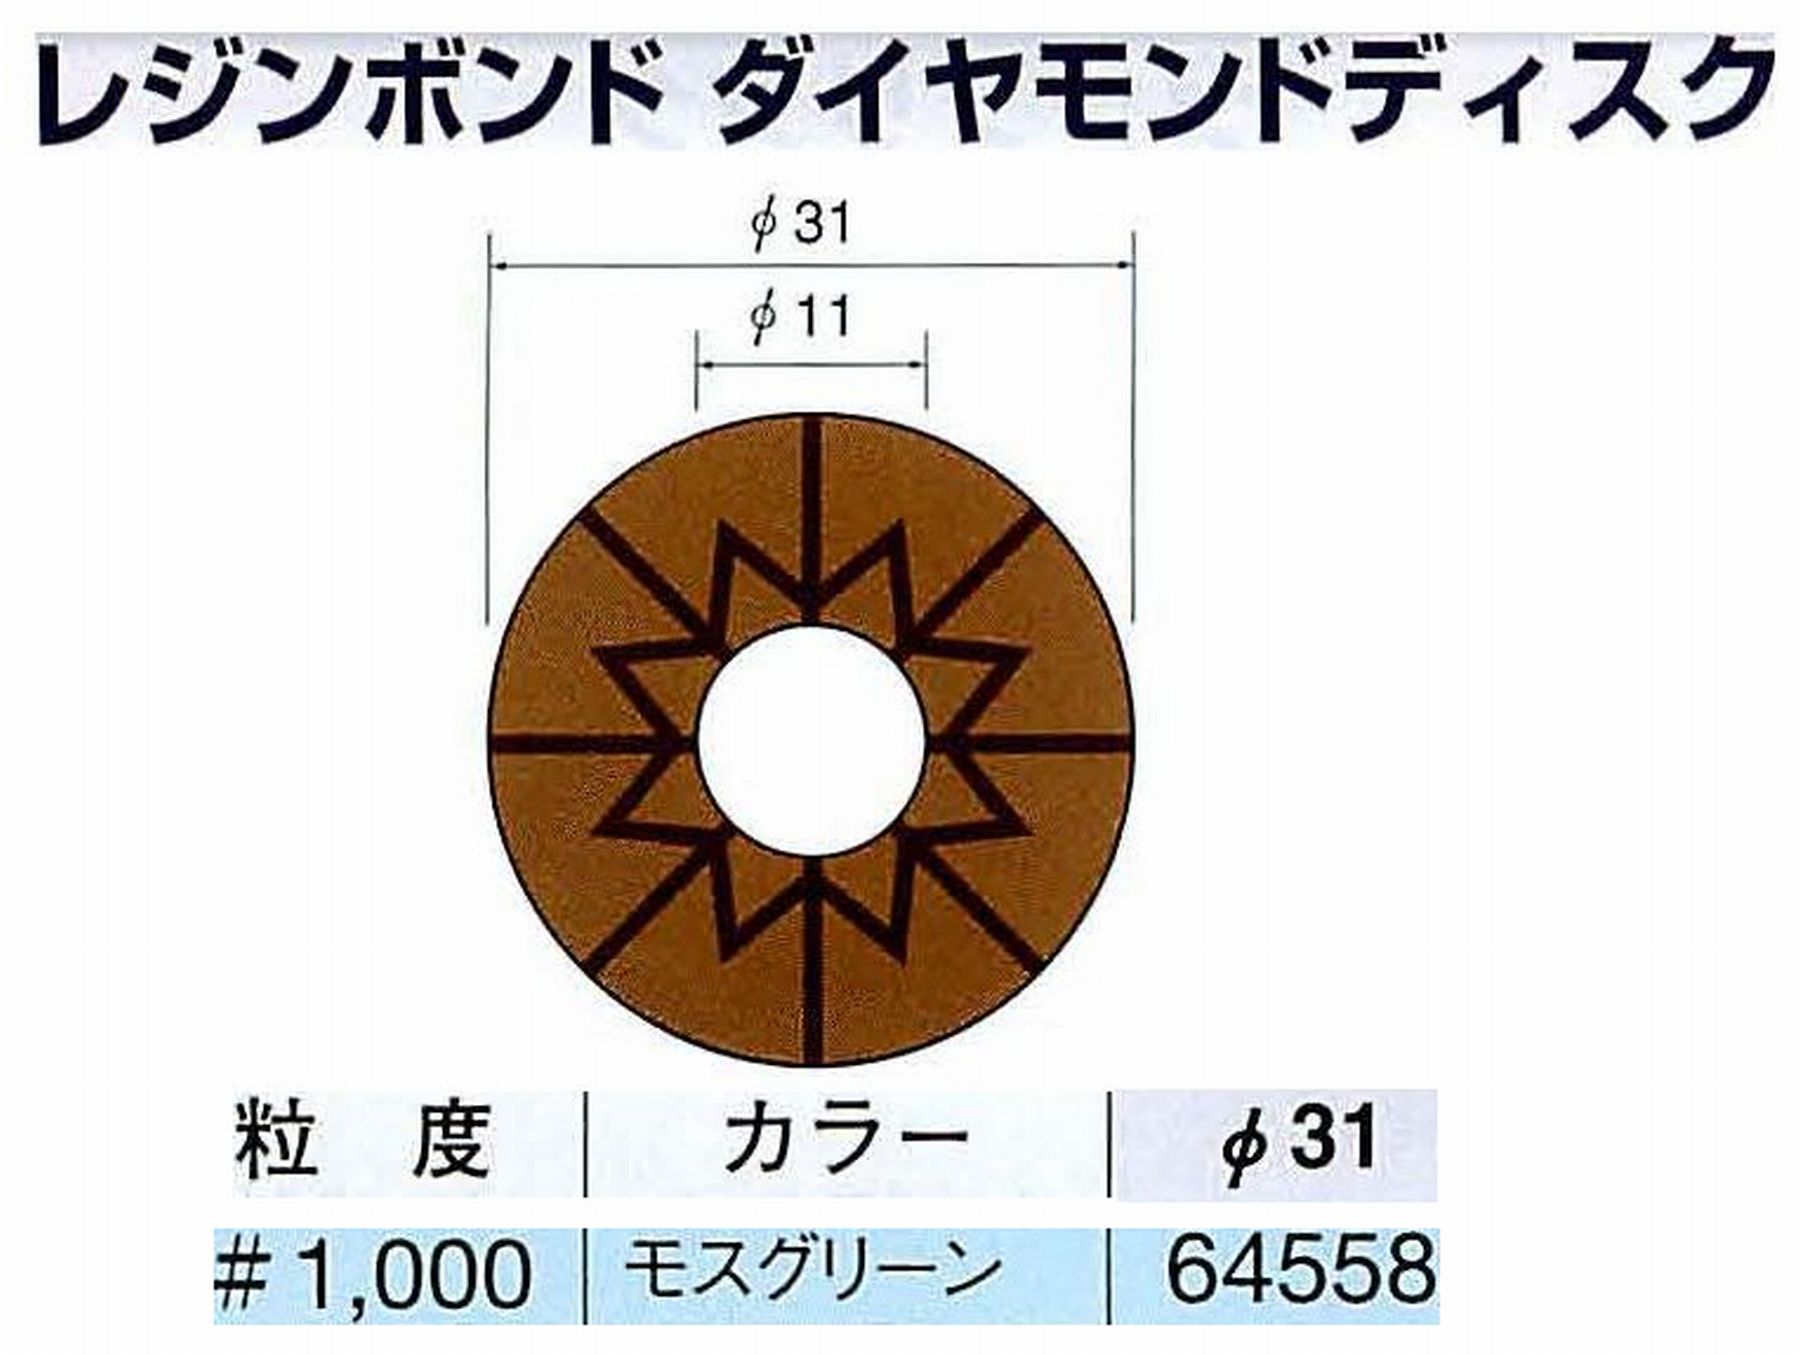 ナカニシ/NAKANISHI アングルグラインダ(電動・エアー) アングルアタッチメント専用工具 レジンボンド ダイヤモンドディスク(パターンタイプ) 64558